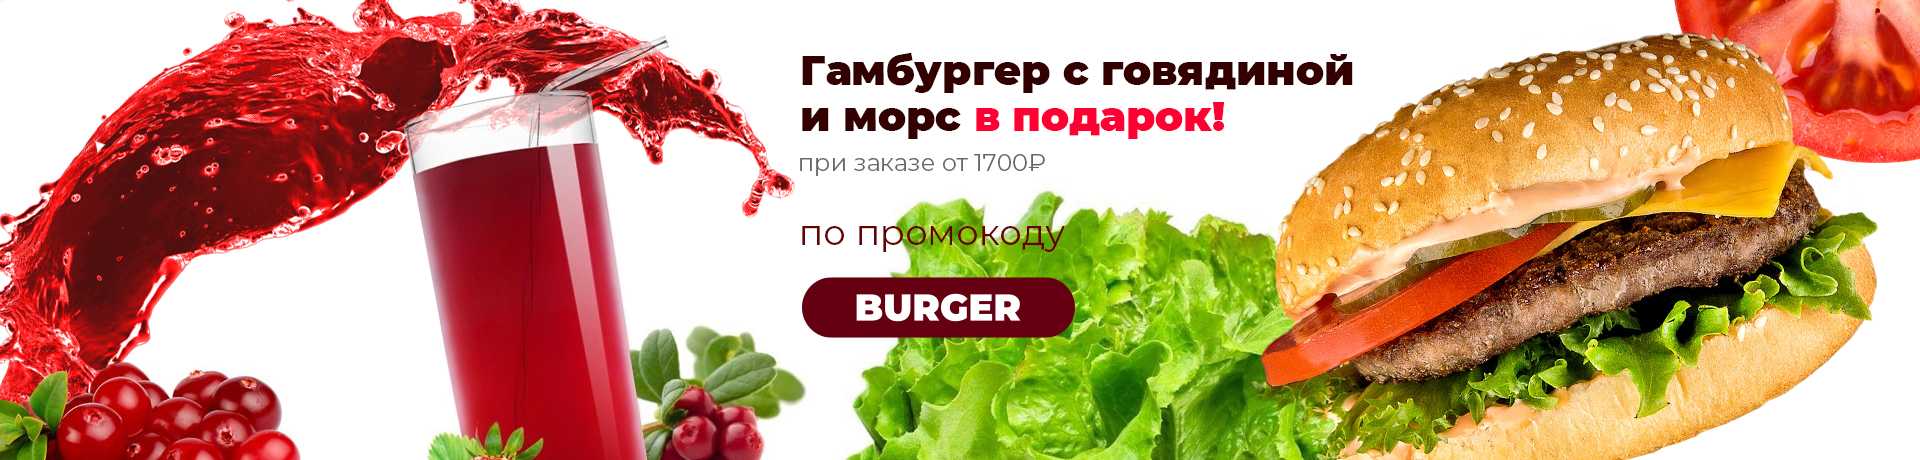 Гамбургер с говядиной и морс в подарок при заказе от 1700 рублей по промокоду BURGER